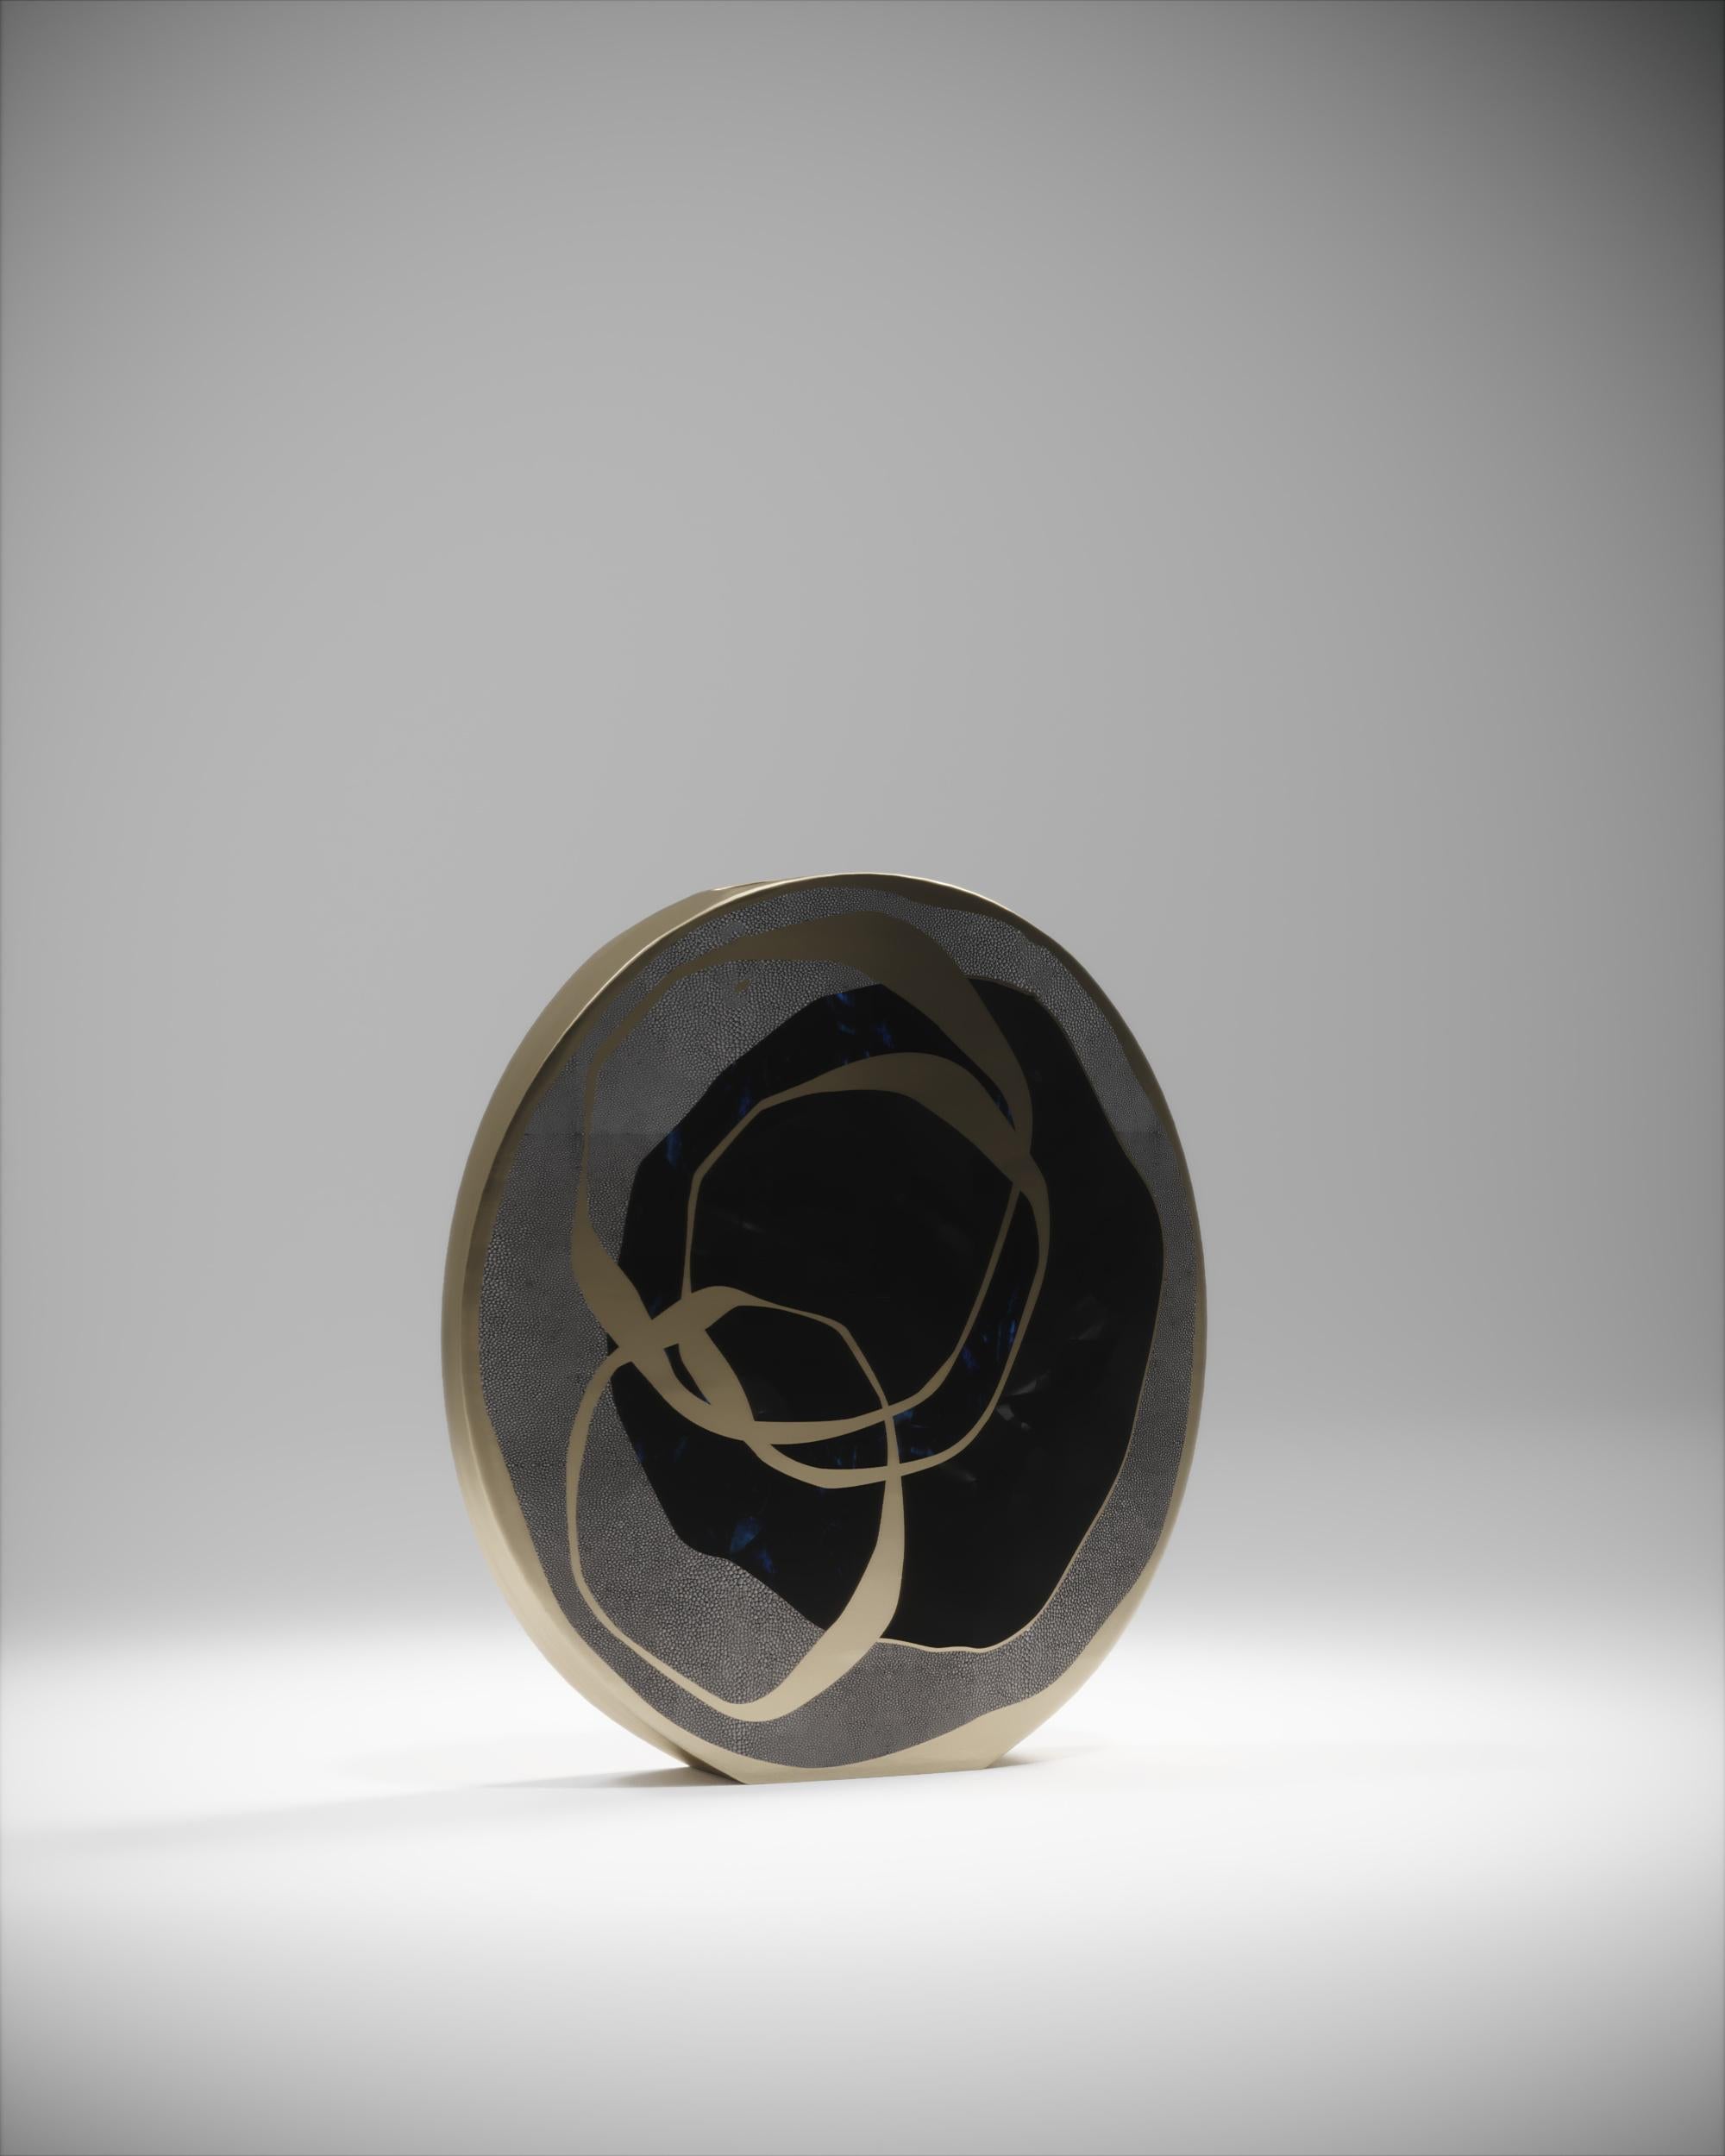 Le vase circulaire Rose est une pièce graphique qui ajoute une note à tout espace. Le motif audacieux est incrusté dans un mélange de galuchat noir, de coquille de stylo bleu et noir et de laiton bronze-patiné. Le vase circulaire est doté d'une